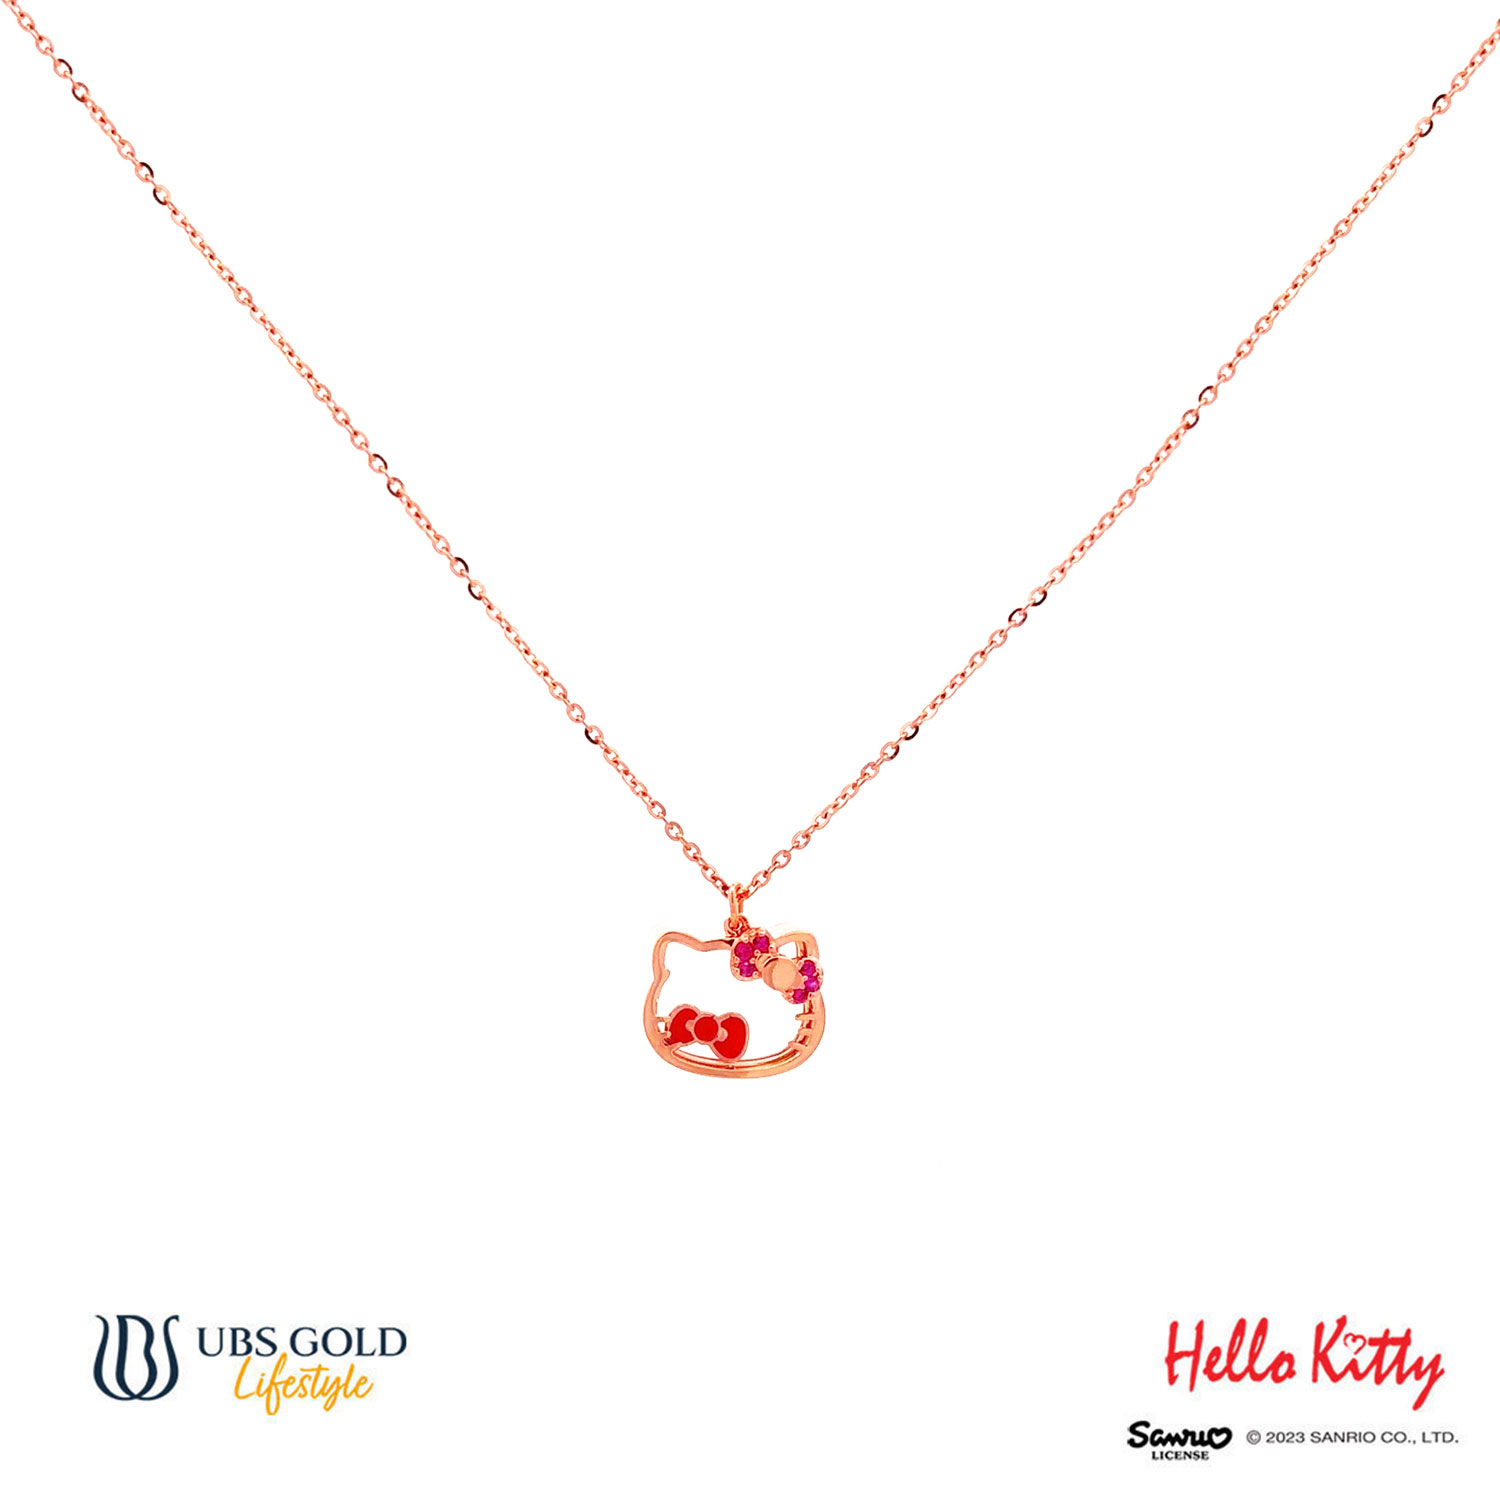 UBS Kalung Emas Sanrio Hello Kitty - Kkz0120 - 17K